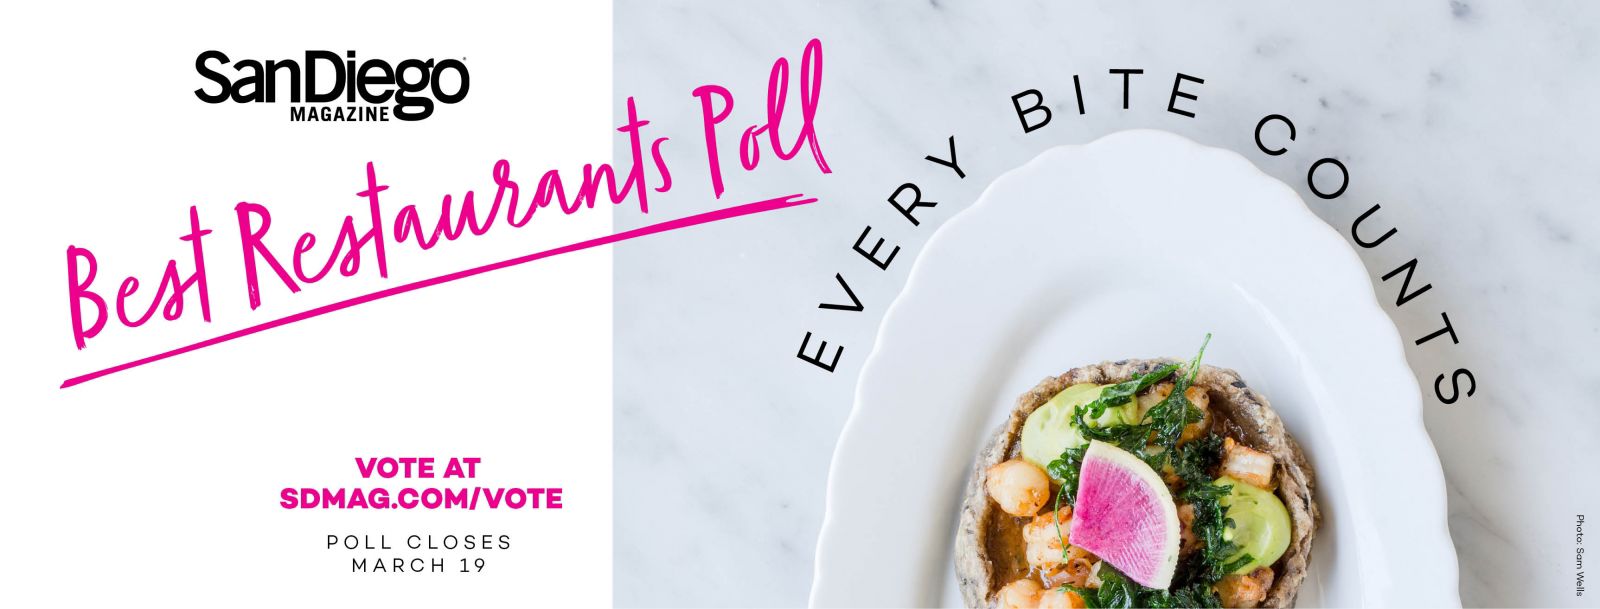 Best Restaurants Voting Toolkit 2018